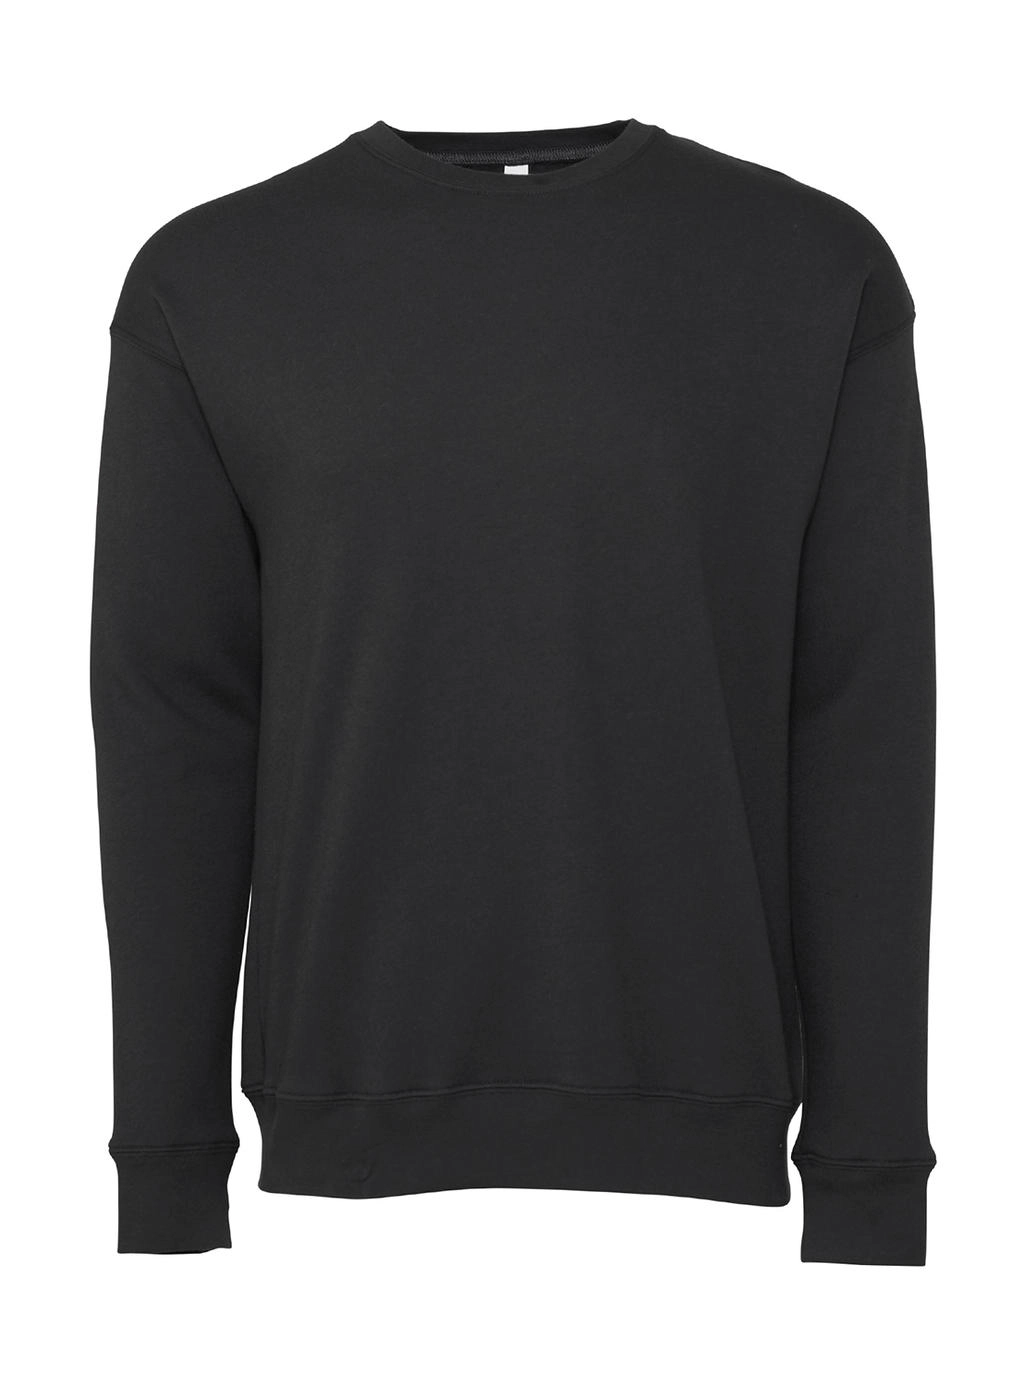 Unisex Drop Shoulder Fleece zum Besticken und Bedrucken in der Farbe DTG Dark Grey mit Ihren Logo, Schriftzug oder Motiv.